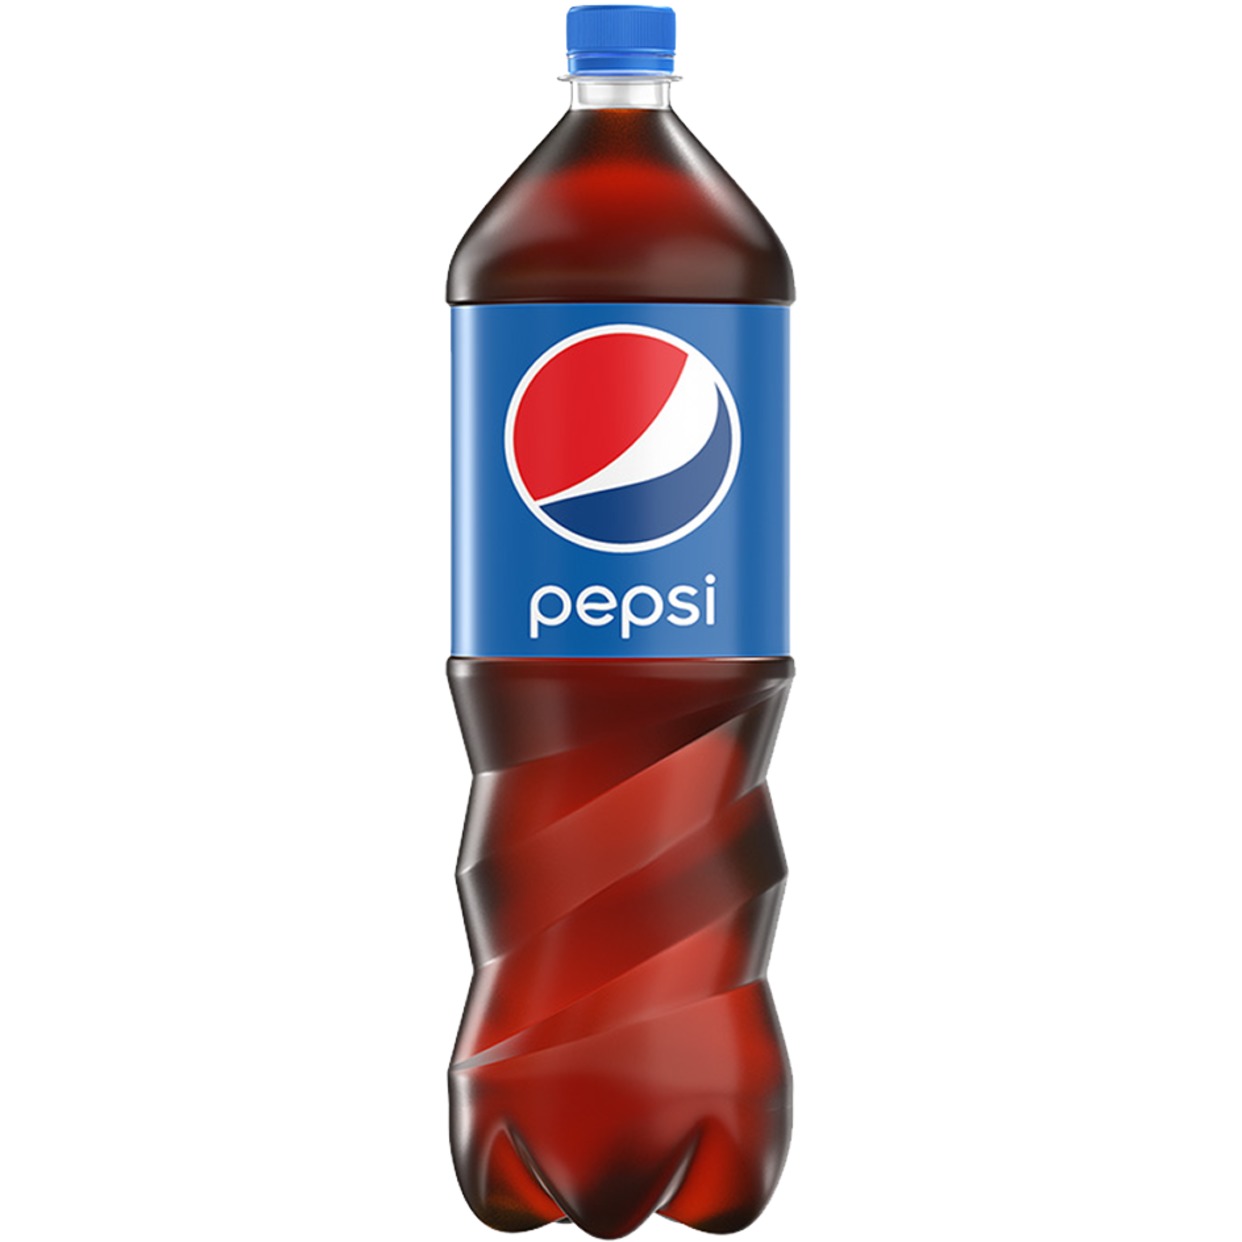 Напитки Pepsi,, 1,5 л по акции в Пятерочке